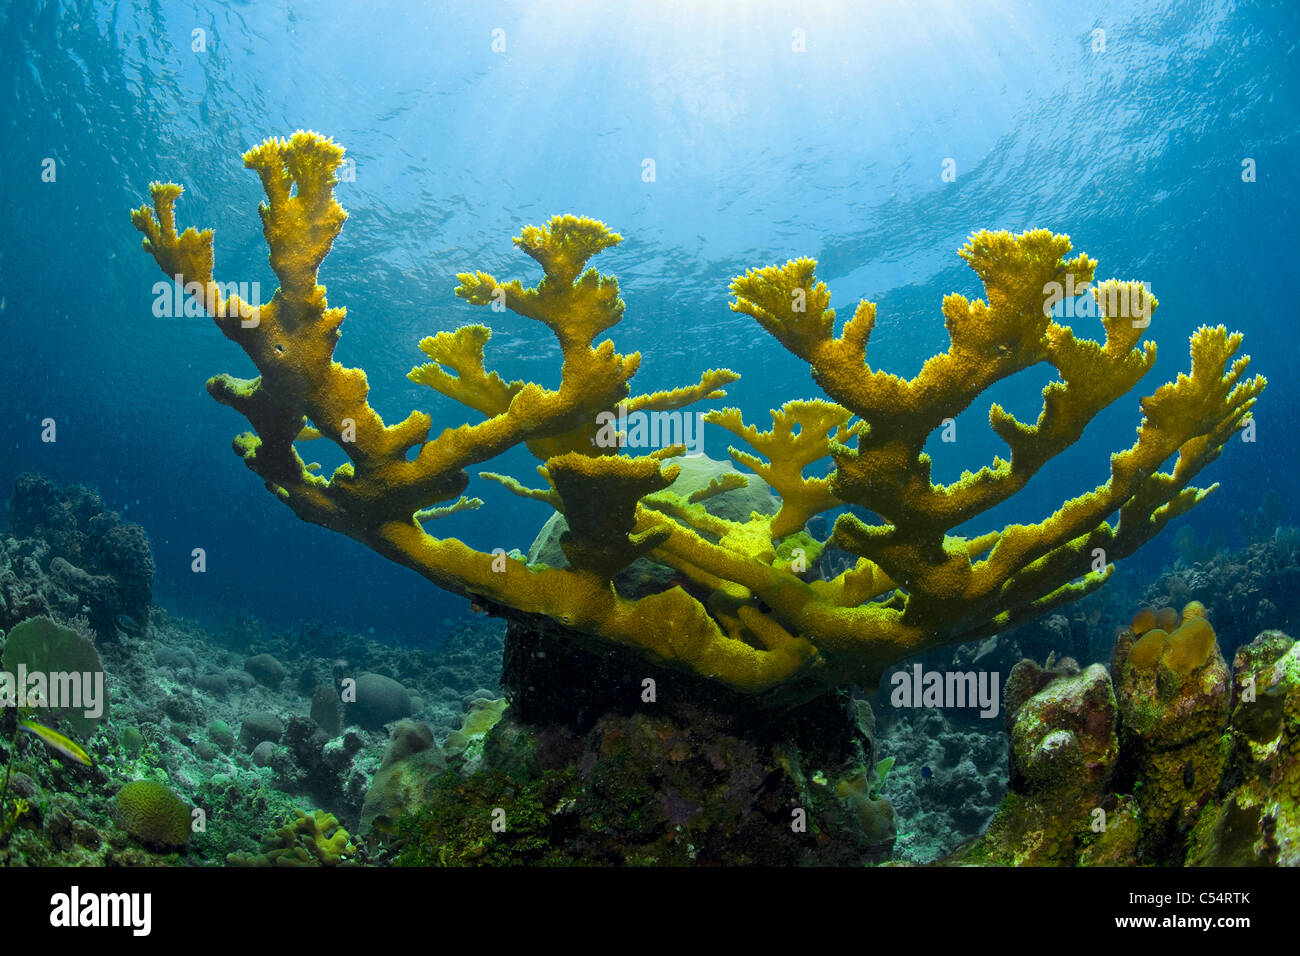 Elkhorn coral (Acropora palmata), coral reef at Utila island, Bay Islands, Honduras, Caribbean Stock Photo